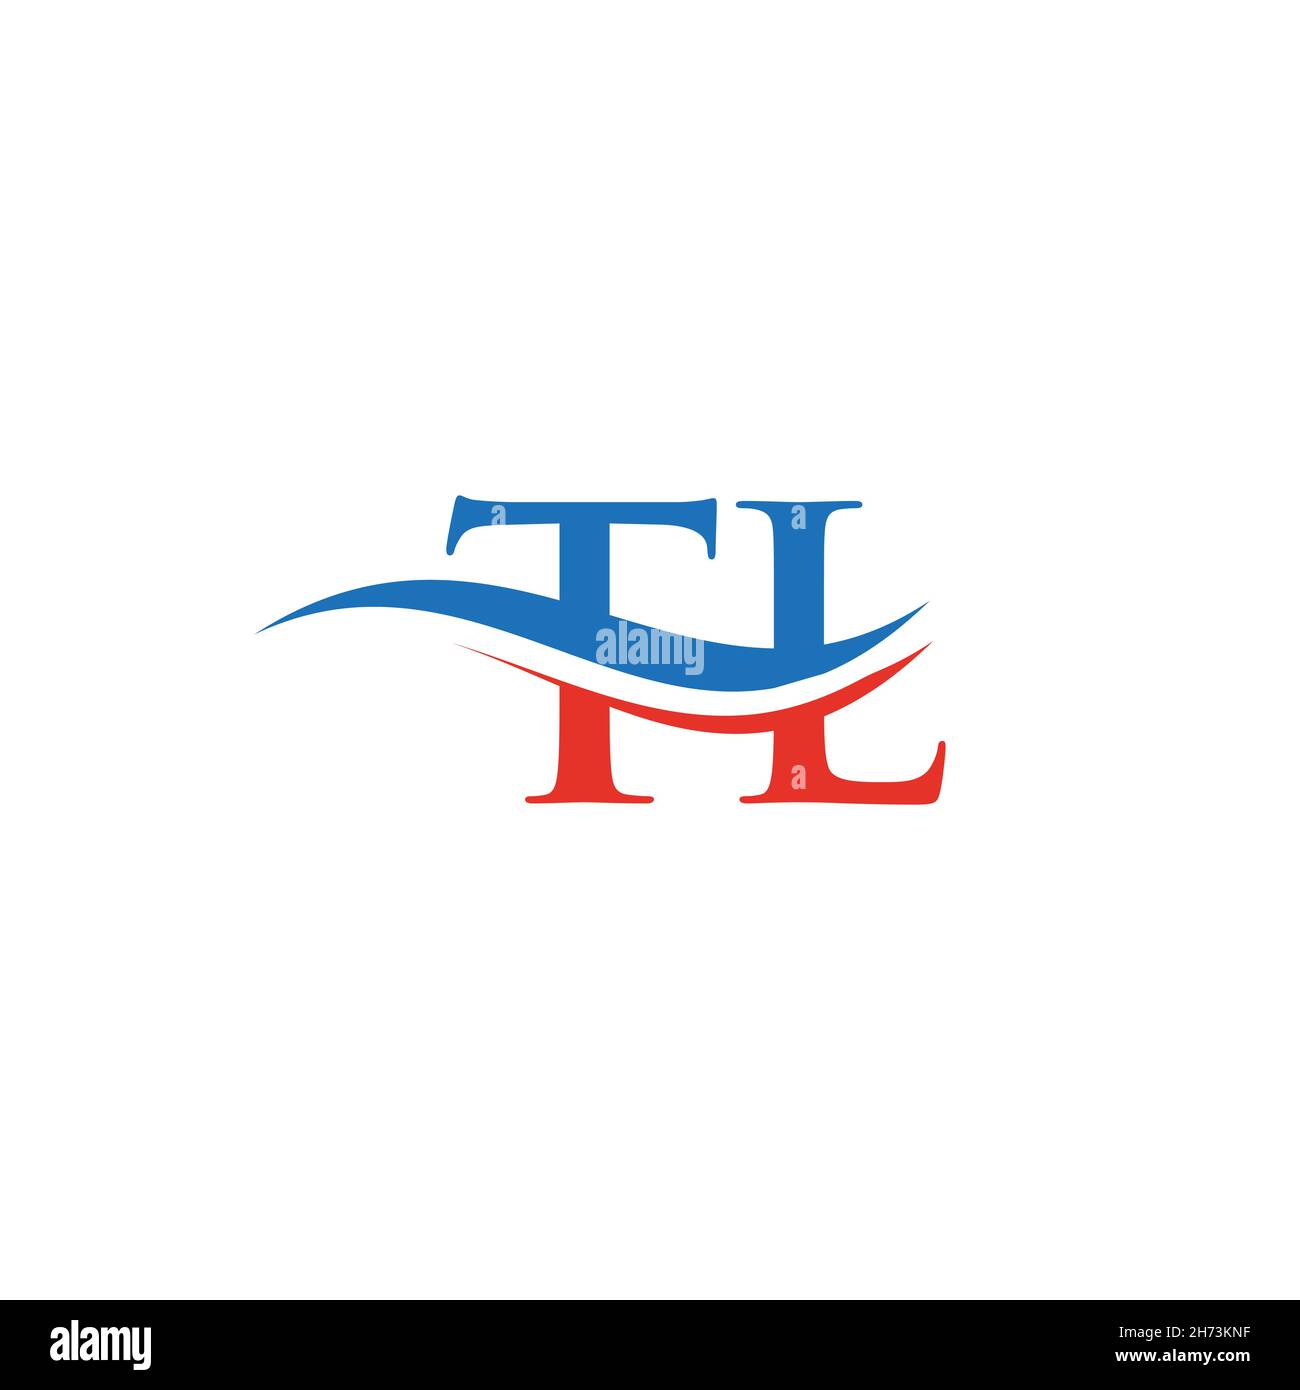 Bedrijf Kwade trouw auteur TL logo. Monogram letter TL logo design Vector. TL letter logo design with  modern trendy Stock Vector Image & Art - Alamy